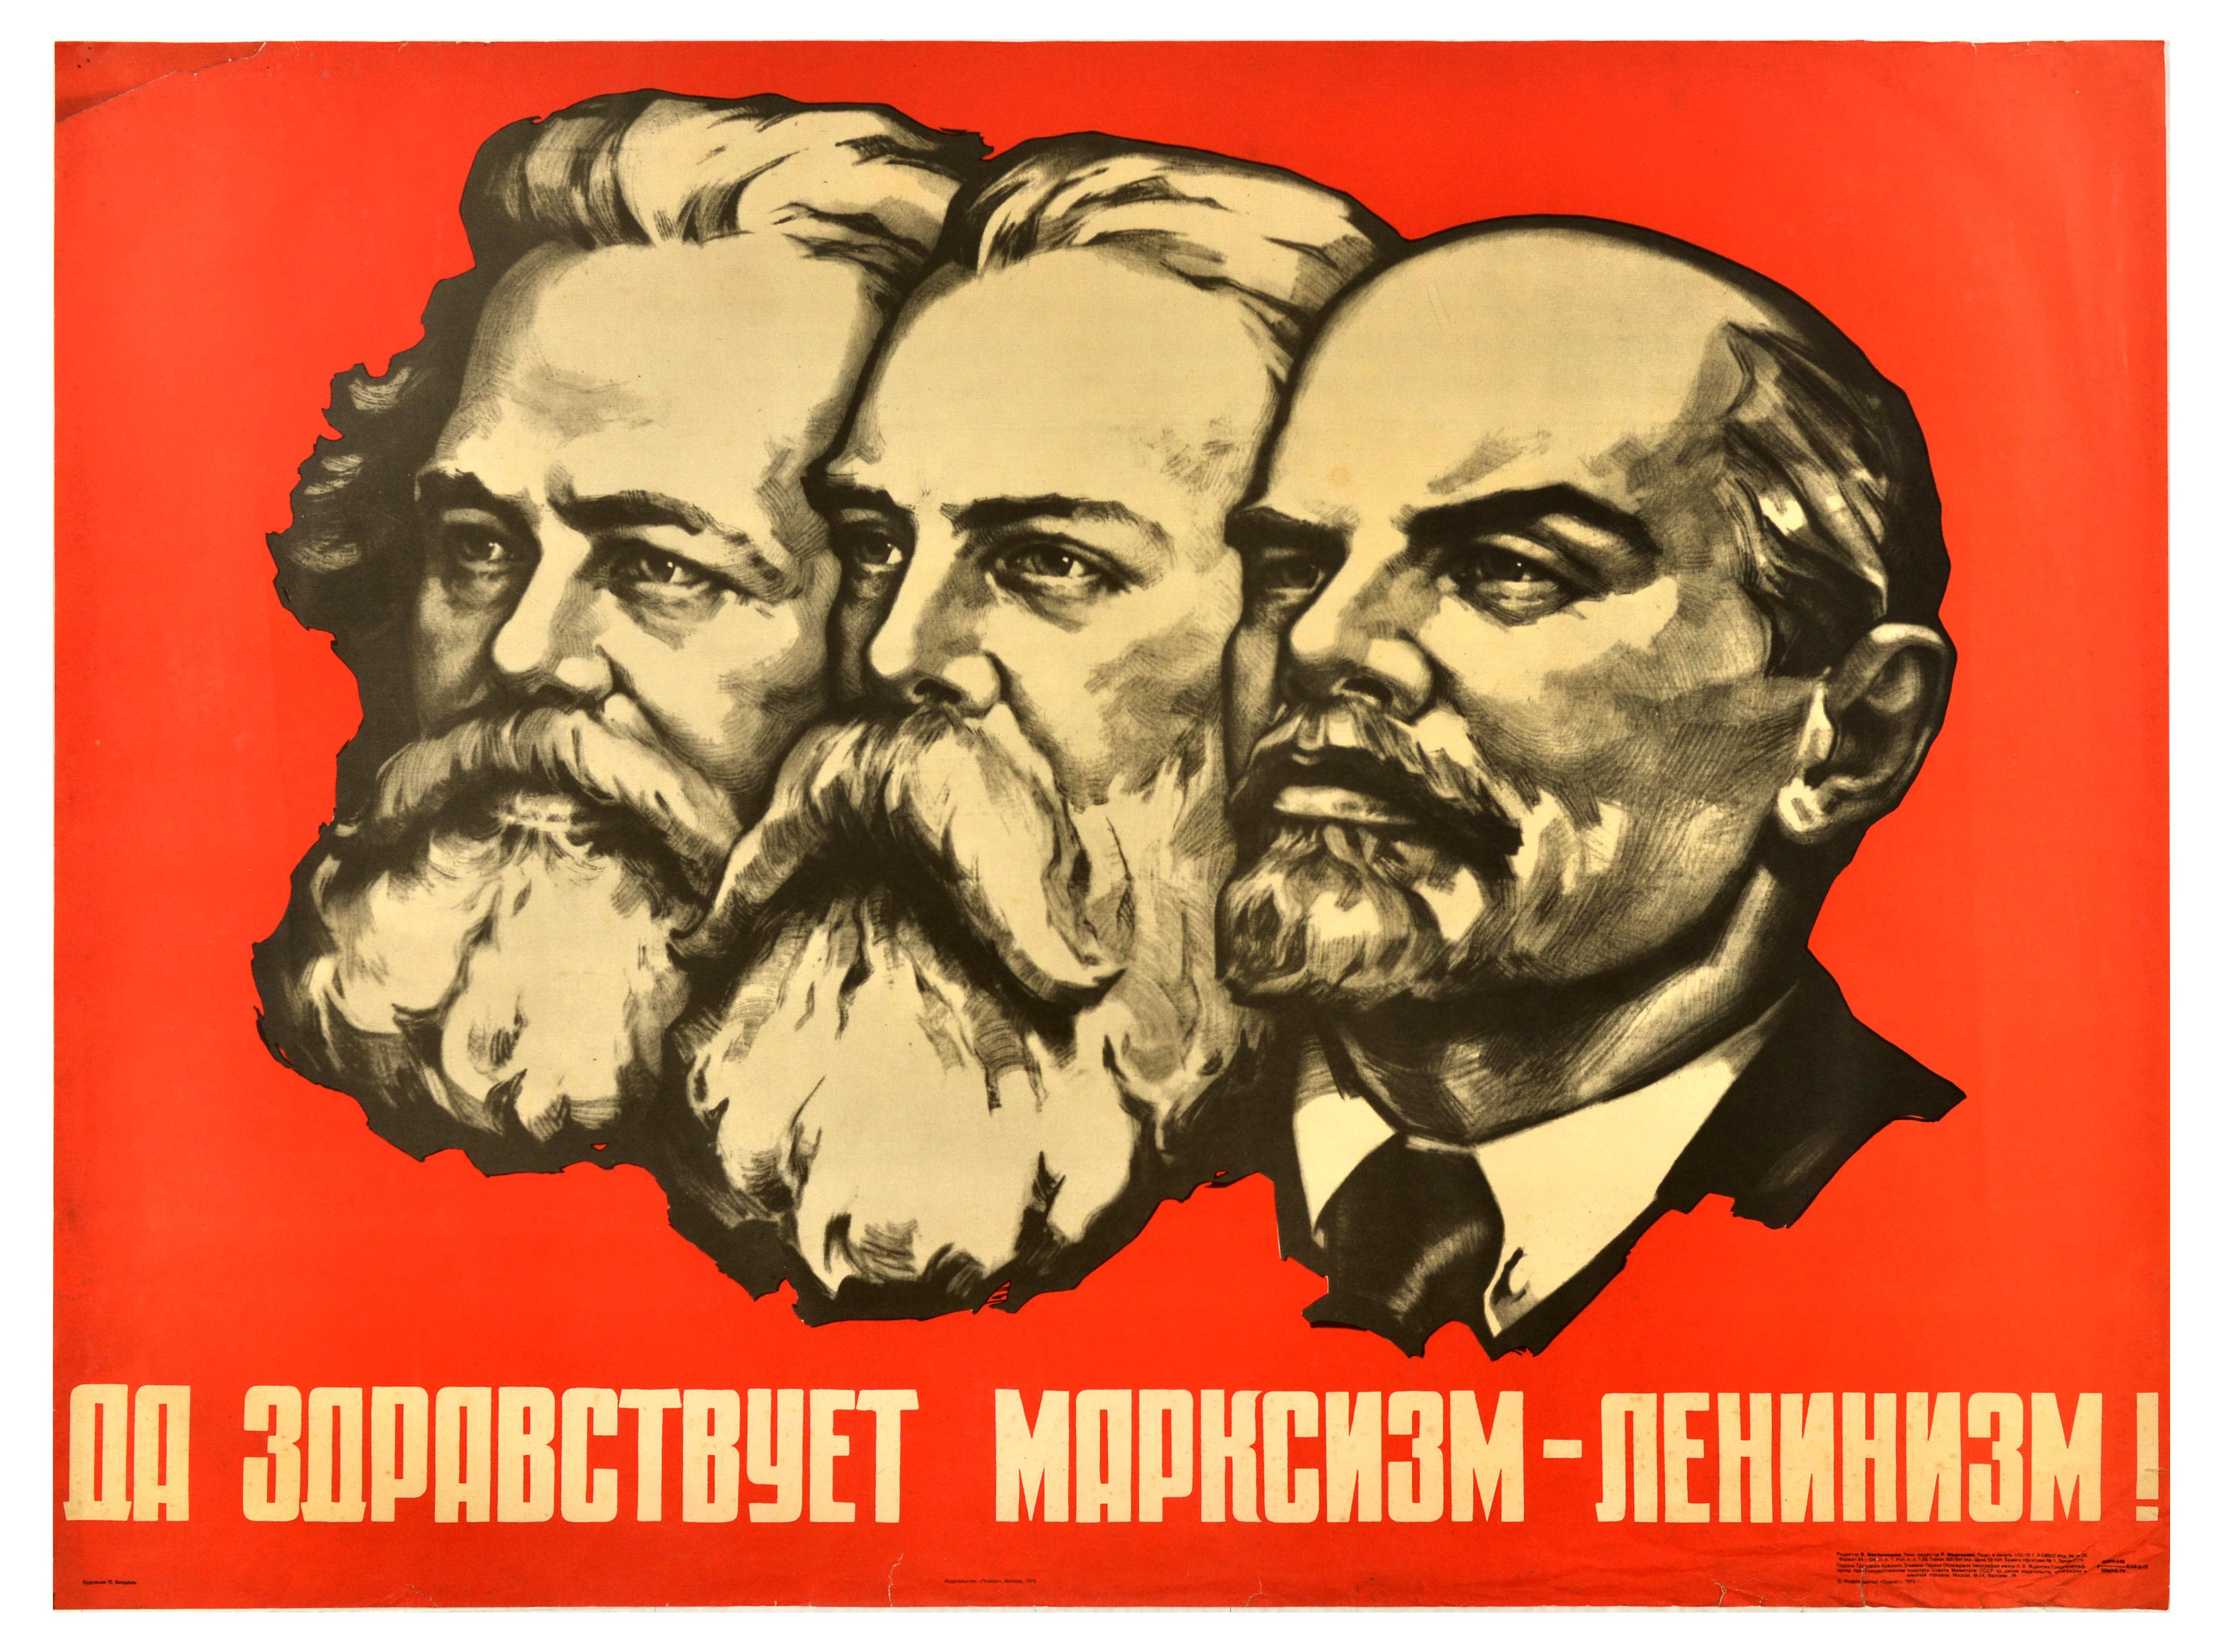 Propaganda Poster Lenin Marx Engels Marxism Leninism Politics USSR Soviet